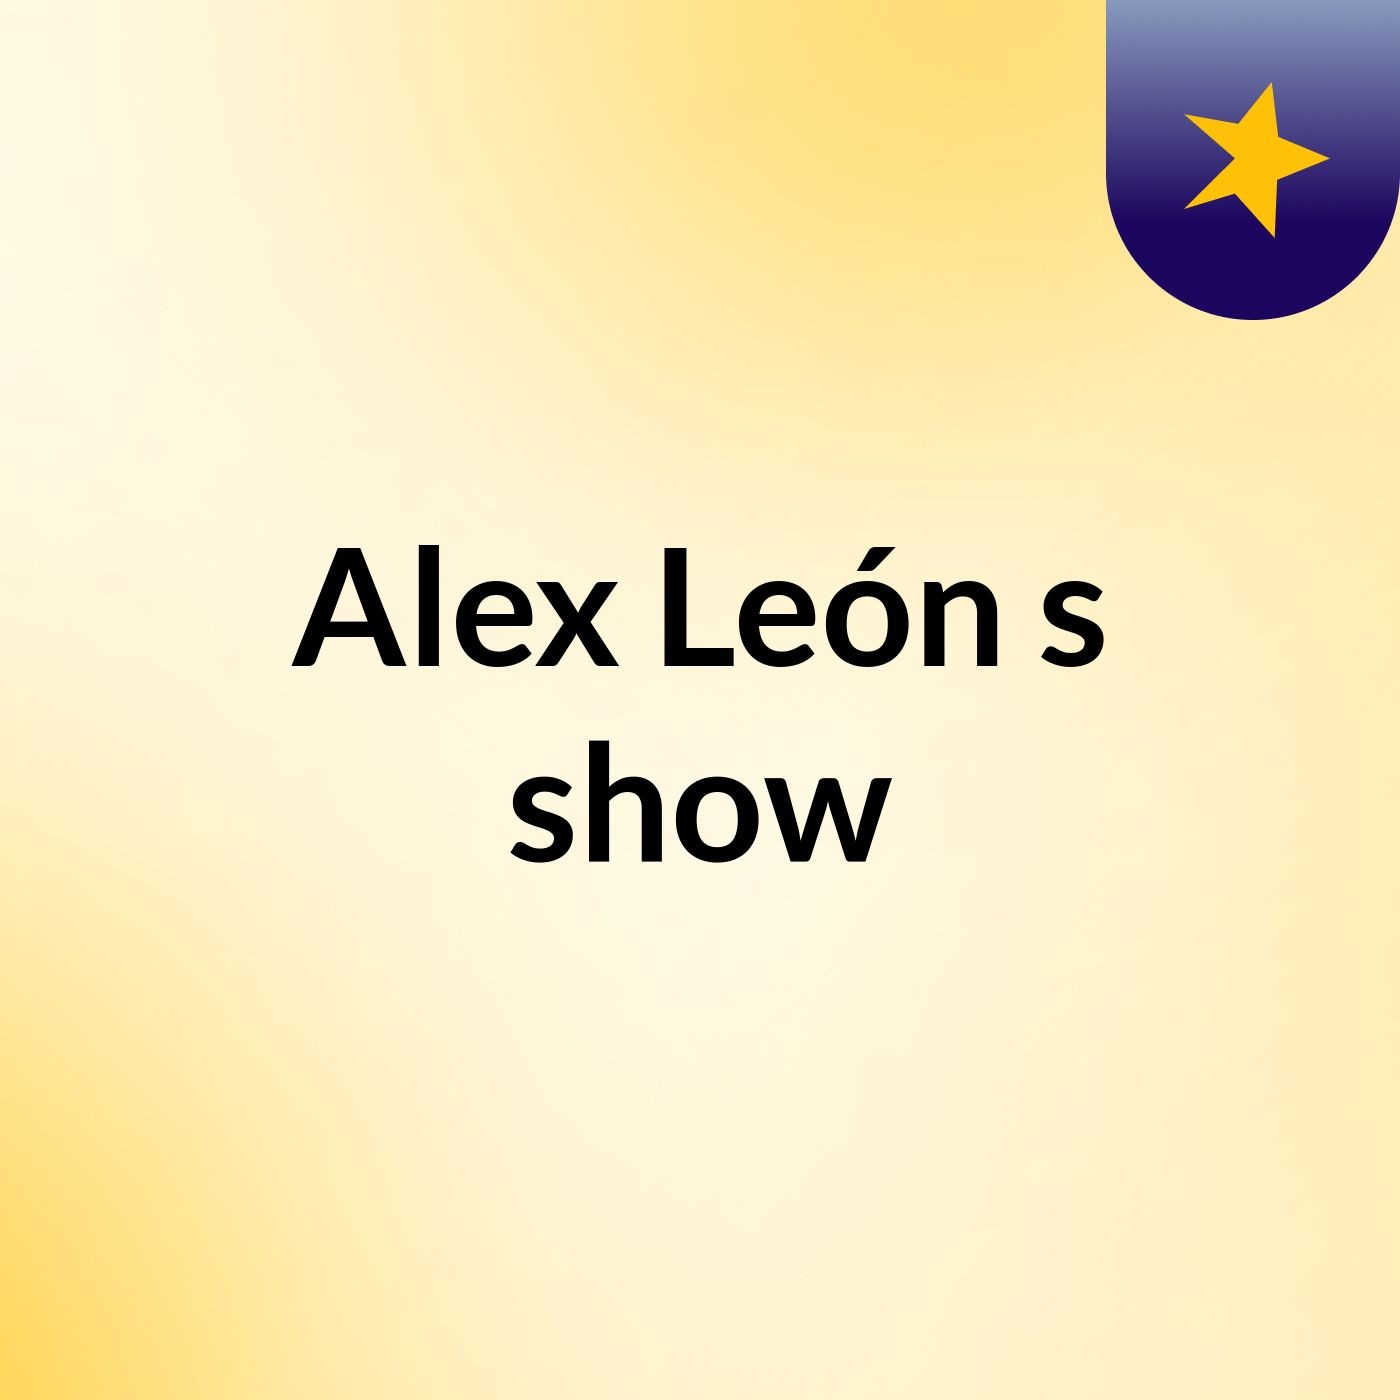 Alex León's show